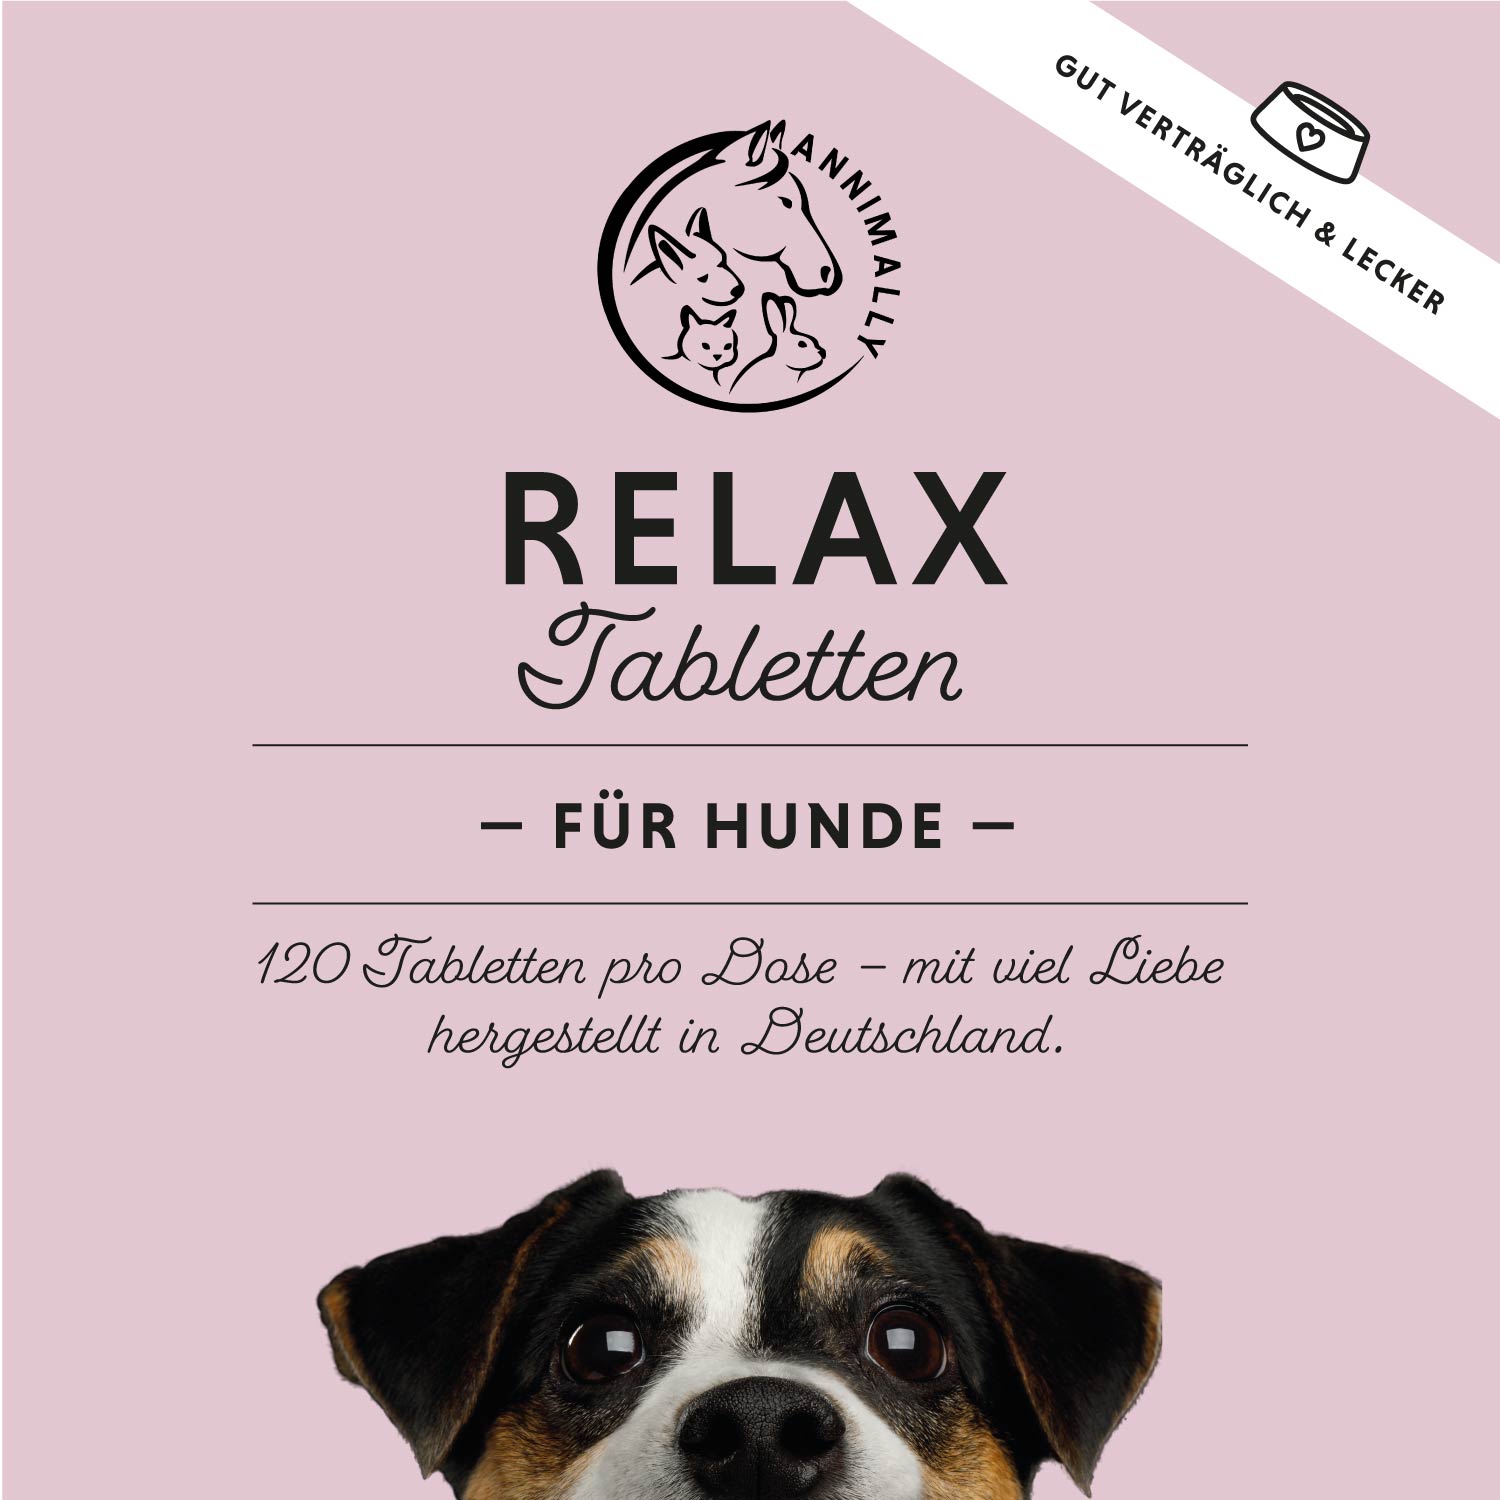 Relax Tabletten - beruhigen ganz natürlich ängstliche Hunde